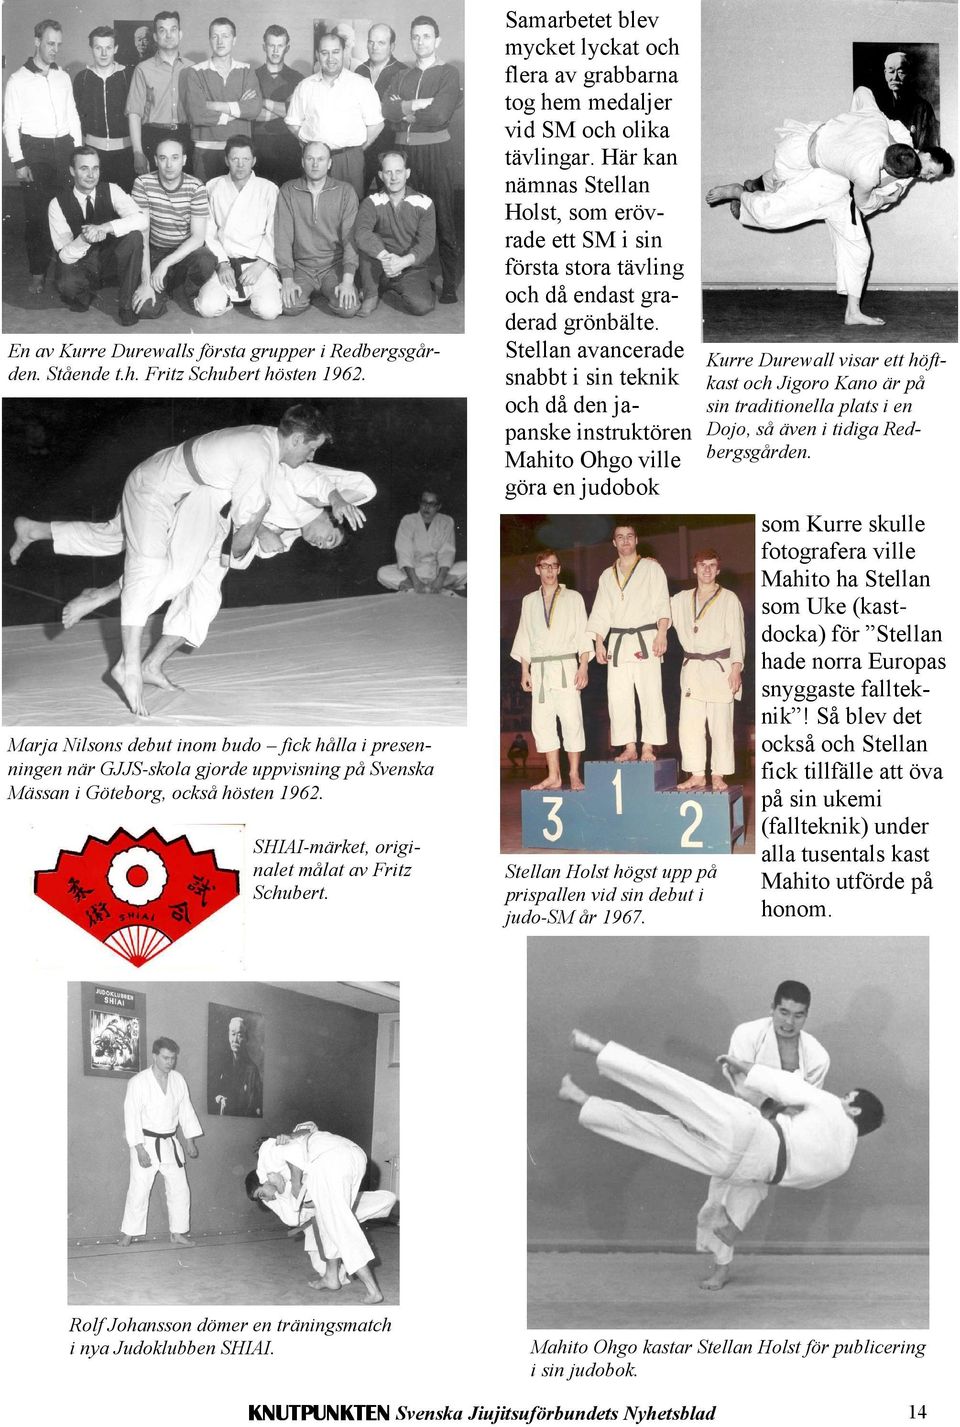 Stellan avancerade snabbt i sin teknik och då den japanske instruktören Mahito Ohgo ville göra en judobok Kurre Durewall visar ett höftkast och Jigoro Kano är på sin traditionella plats i en Dojo, så